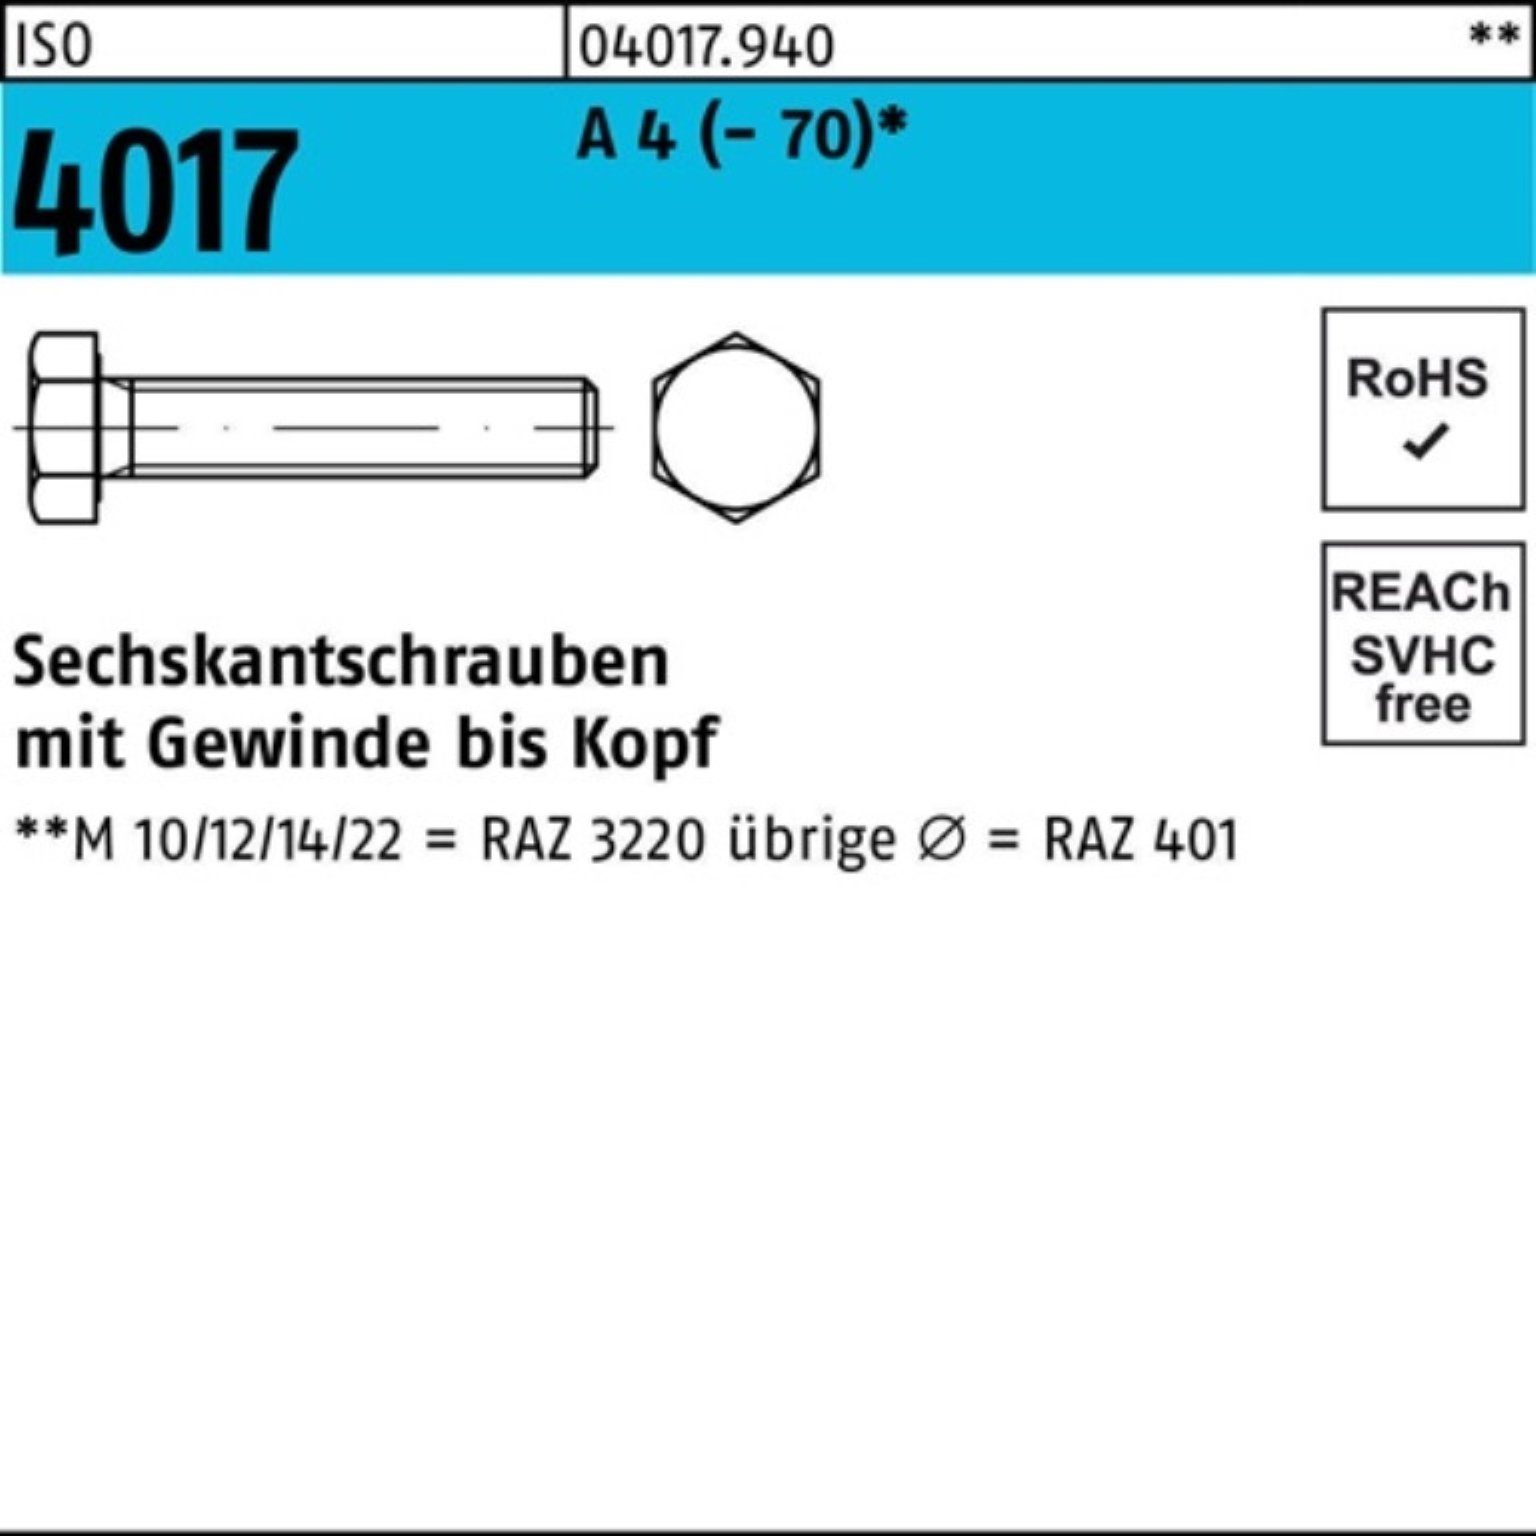 Bufab Sechskantschraube M8x (70) 4 Pack 200er 12 A VG ISO 200 4017 Stück Sechskantschraube